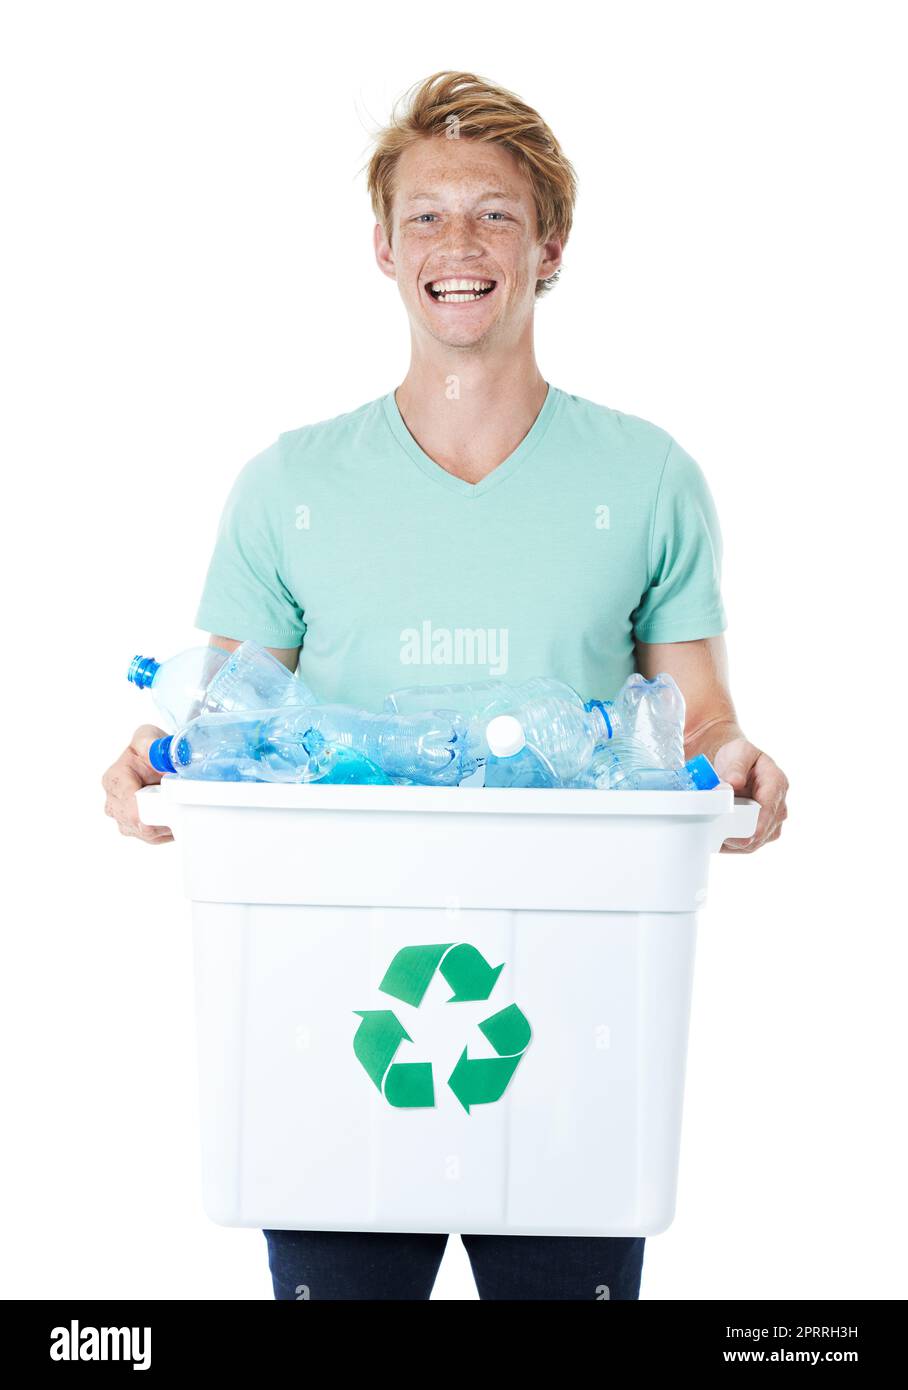 Ich tue meinen Teil für Mutter Erde. Ein glücklicher junger Mann mit rotem Kopf, der einen mit leeren Plastikflaschen gefüllten Recyclingbehälter in der Hand hält. Stockfoto